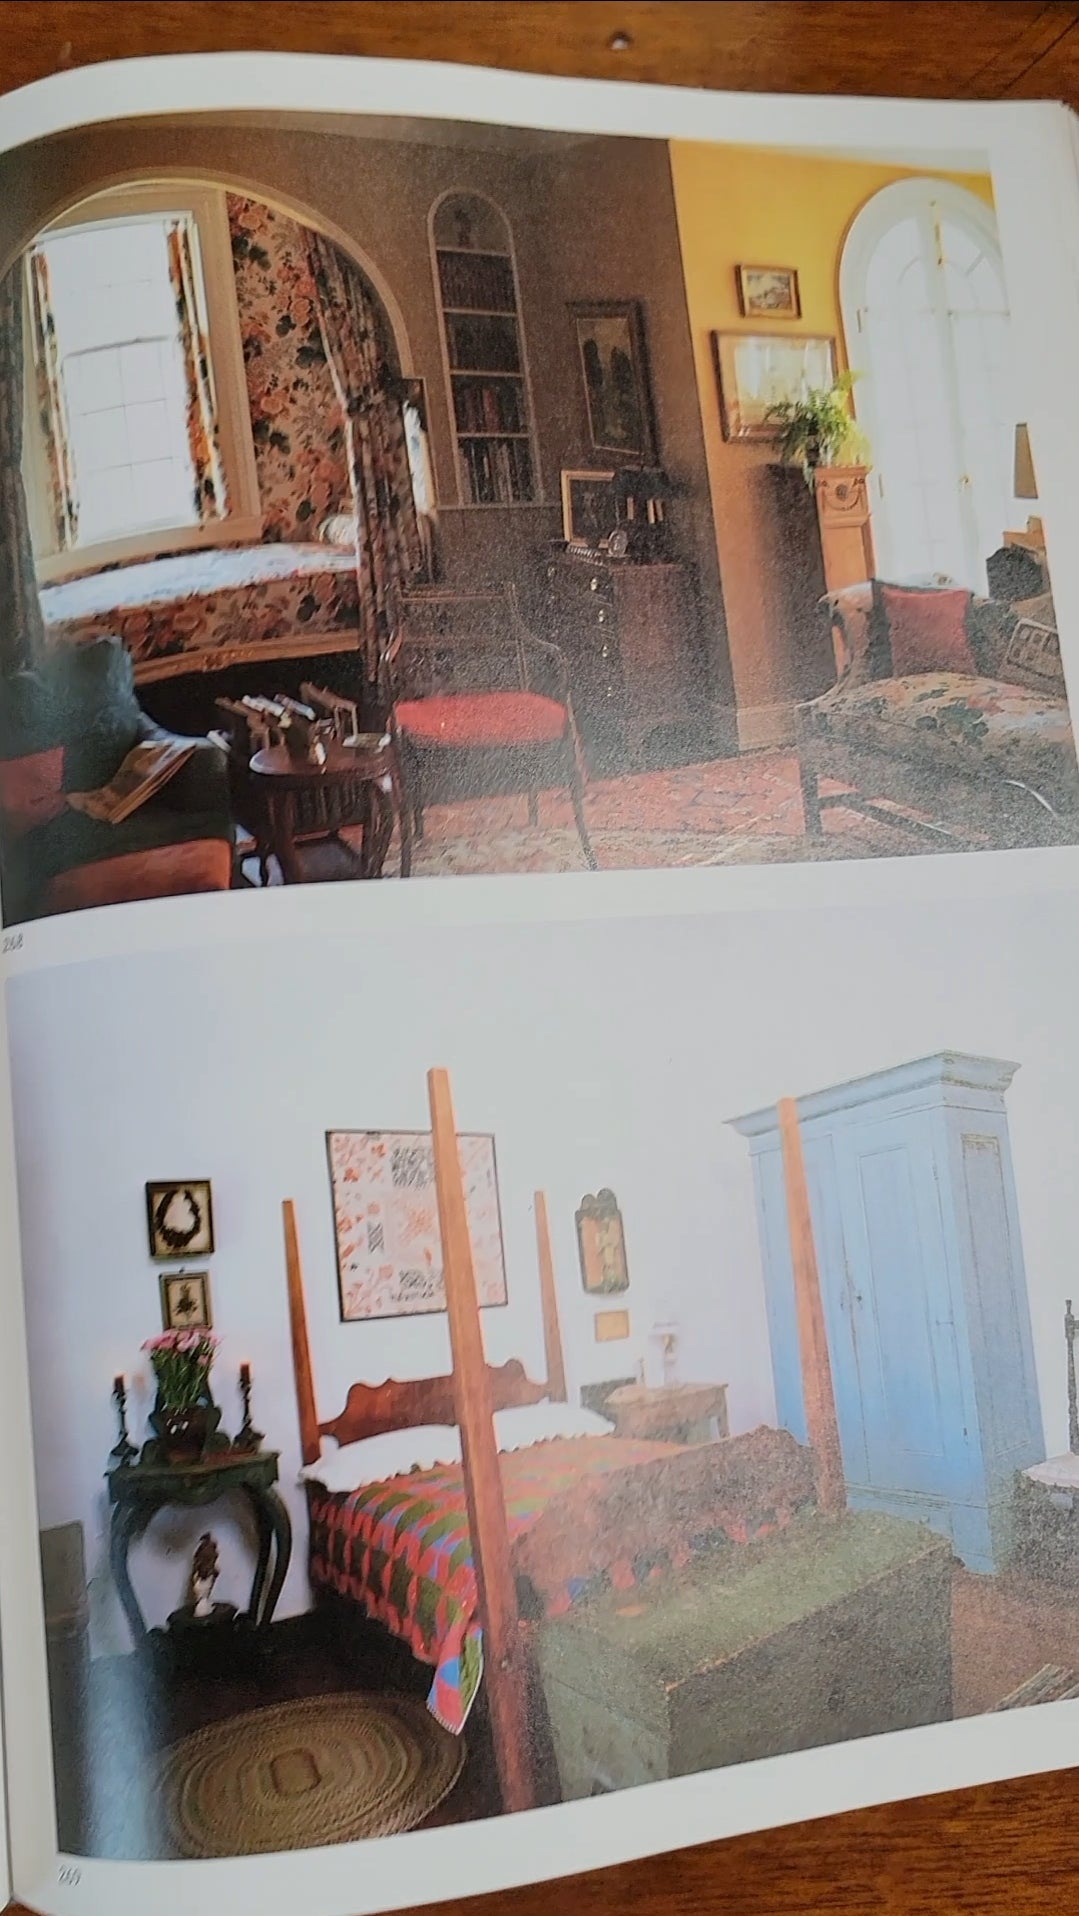 1988 Interior Design Coffee Table Book